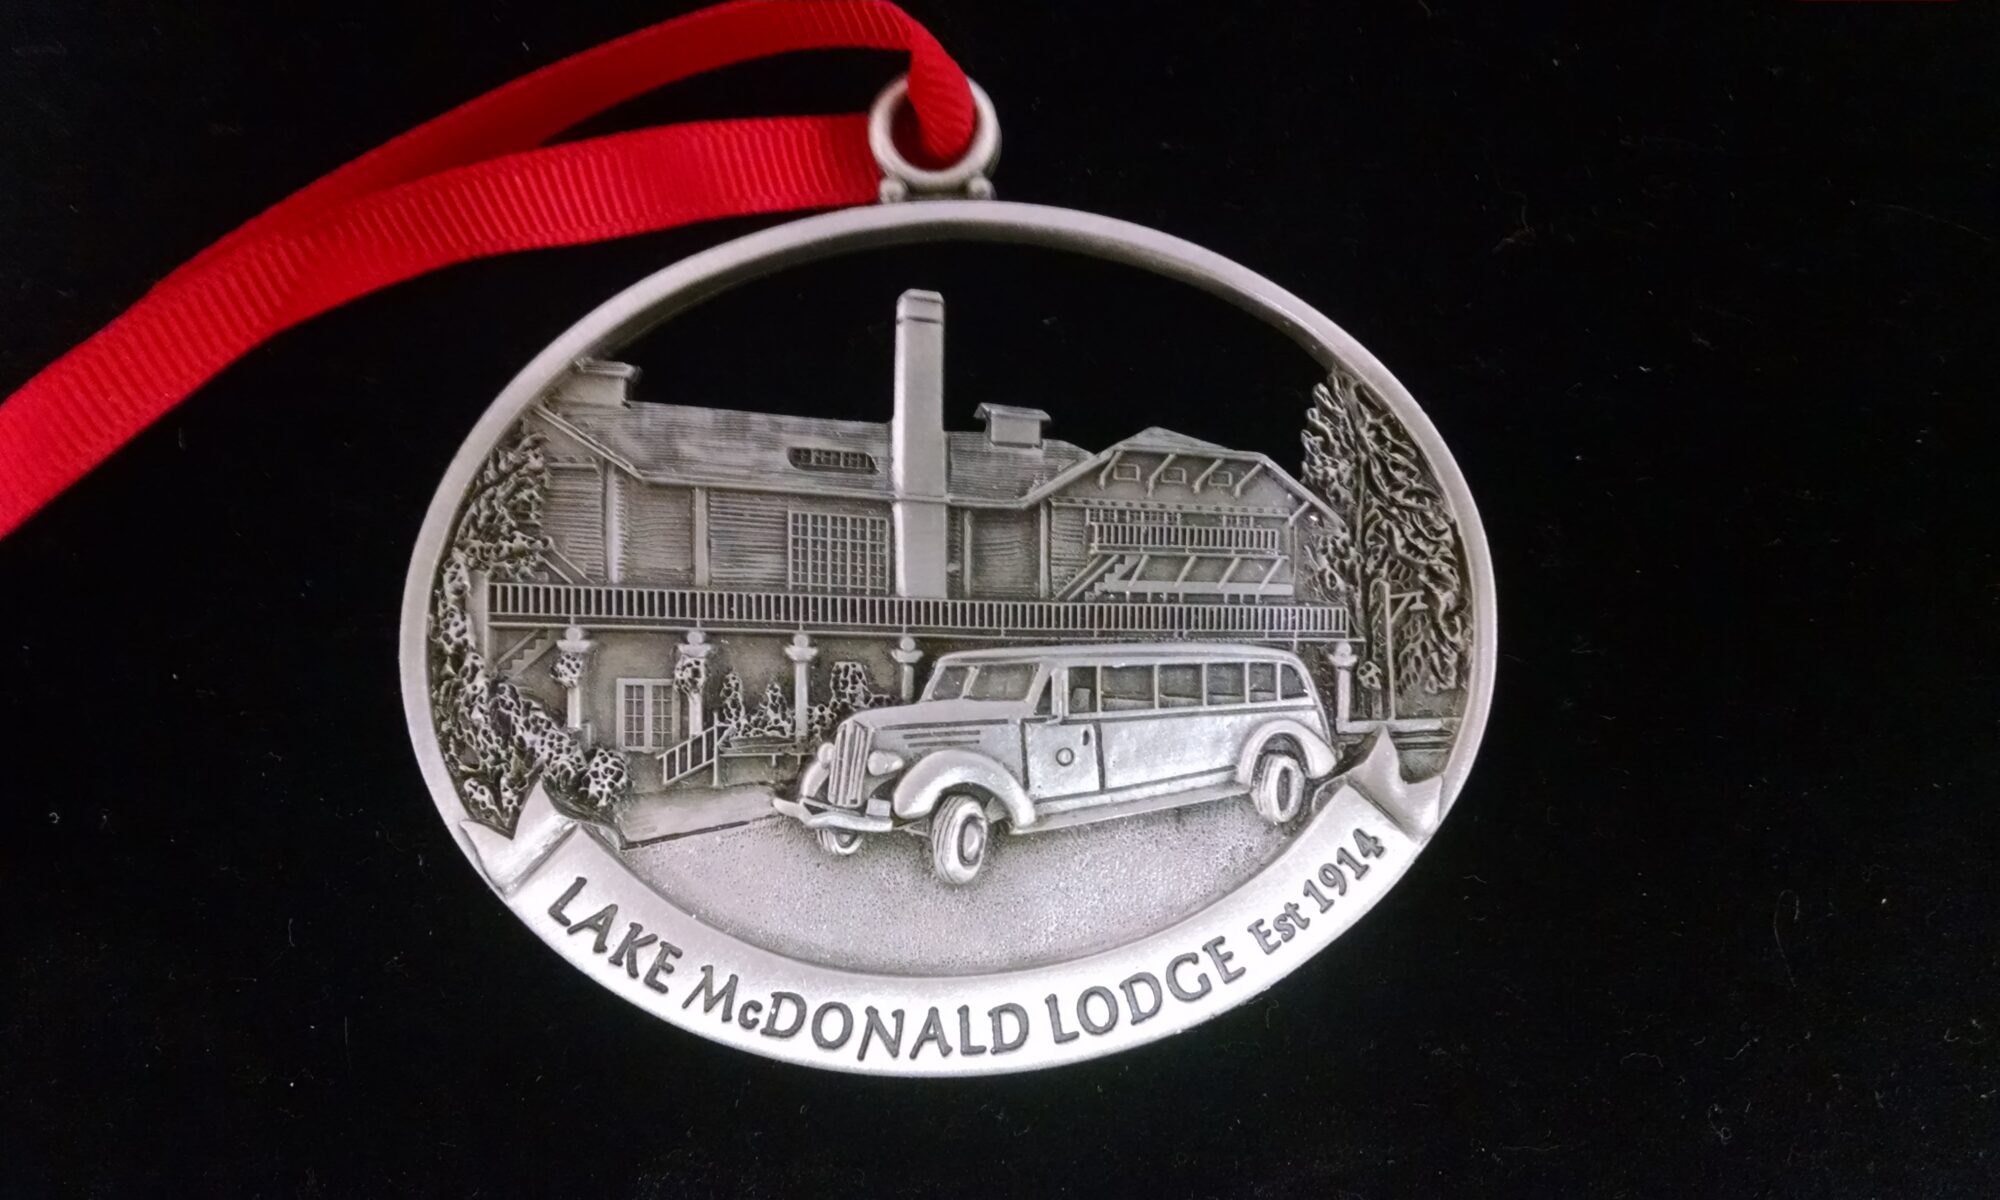 Lake MC Donald lodge EST 1914 locket